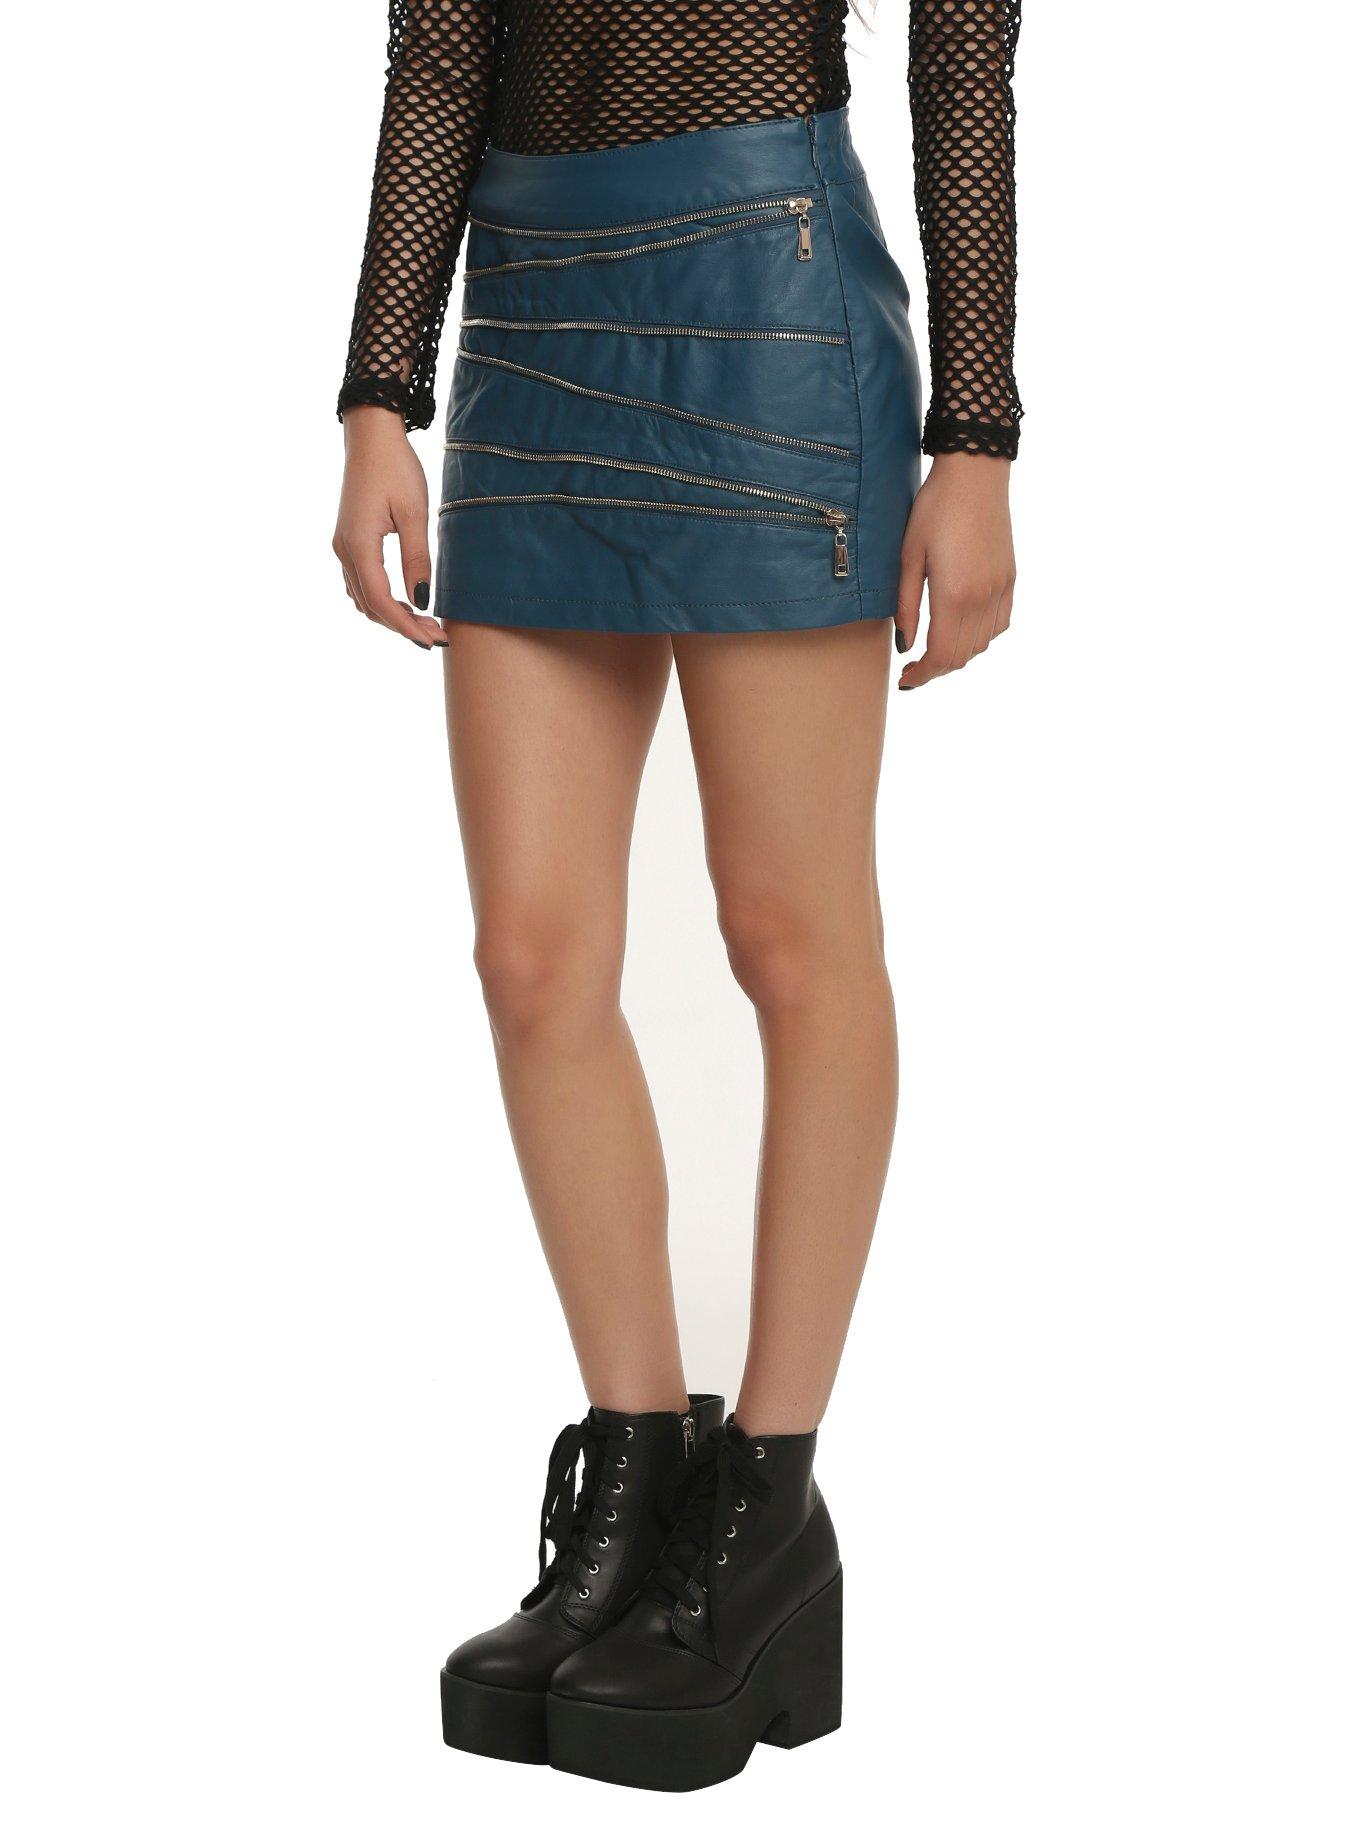 Teal Zipper Skirt, , alternate